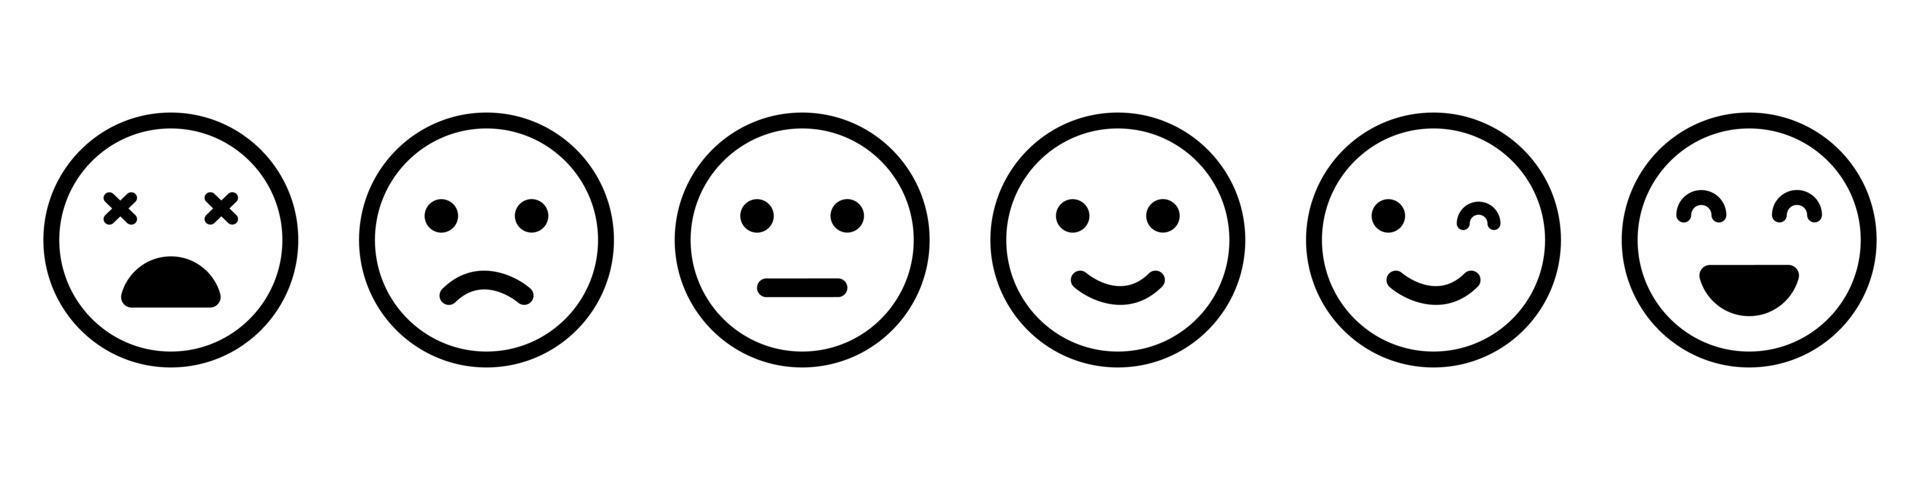 Emoticons Line Icon Set Positive Happy Smile Sad Unhappy Faces